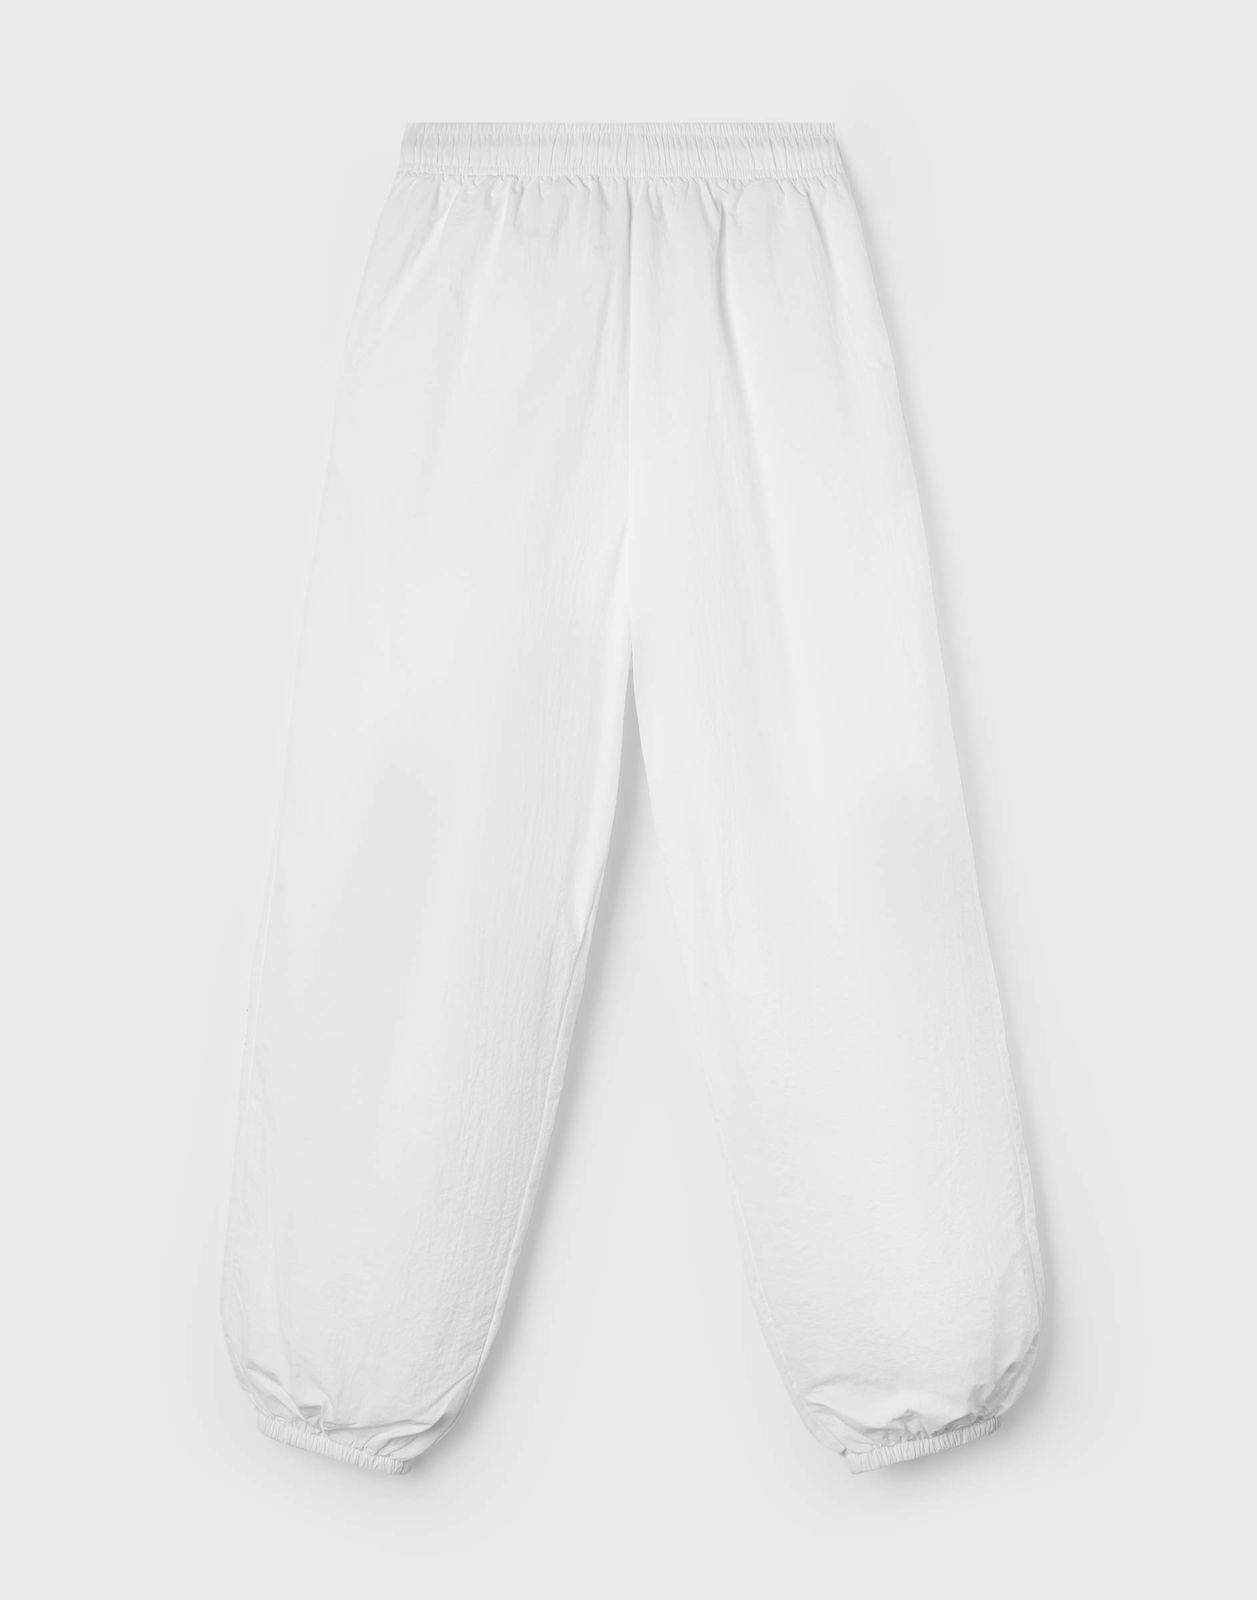 Спортивные брюки женские Gloria Jeans GAC021644 белый S/170